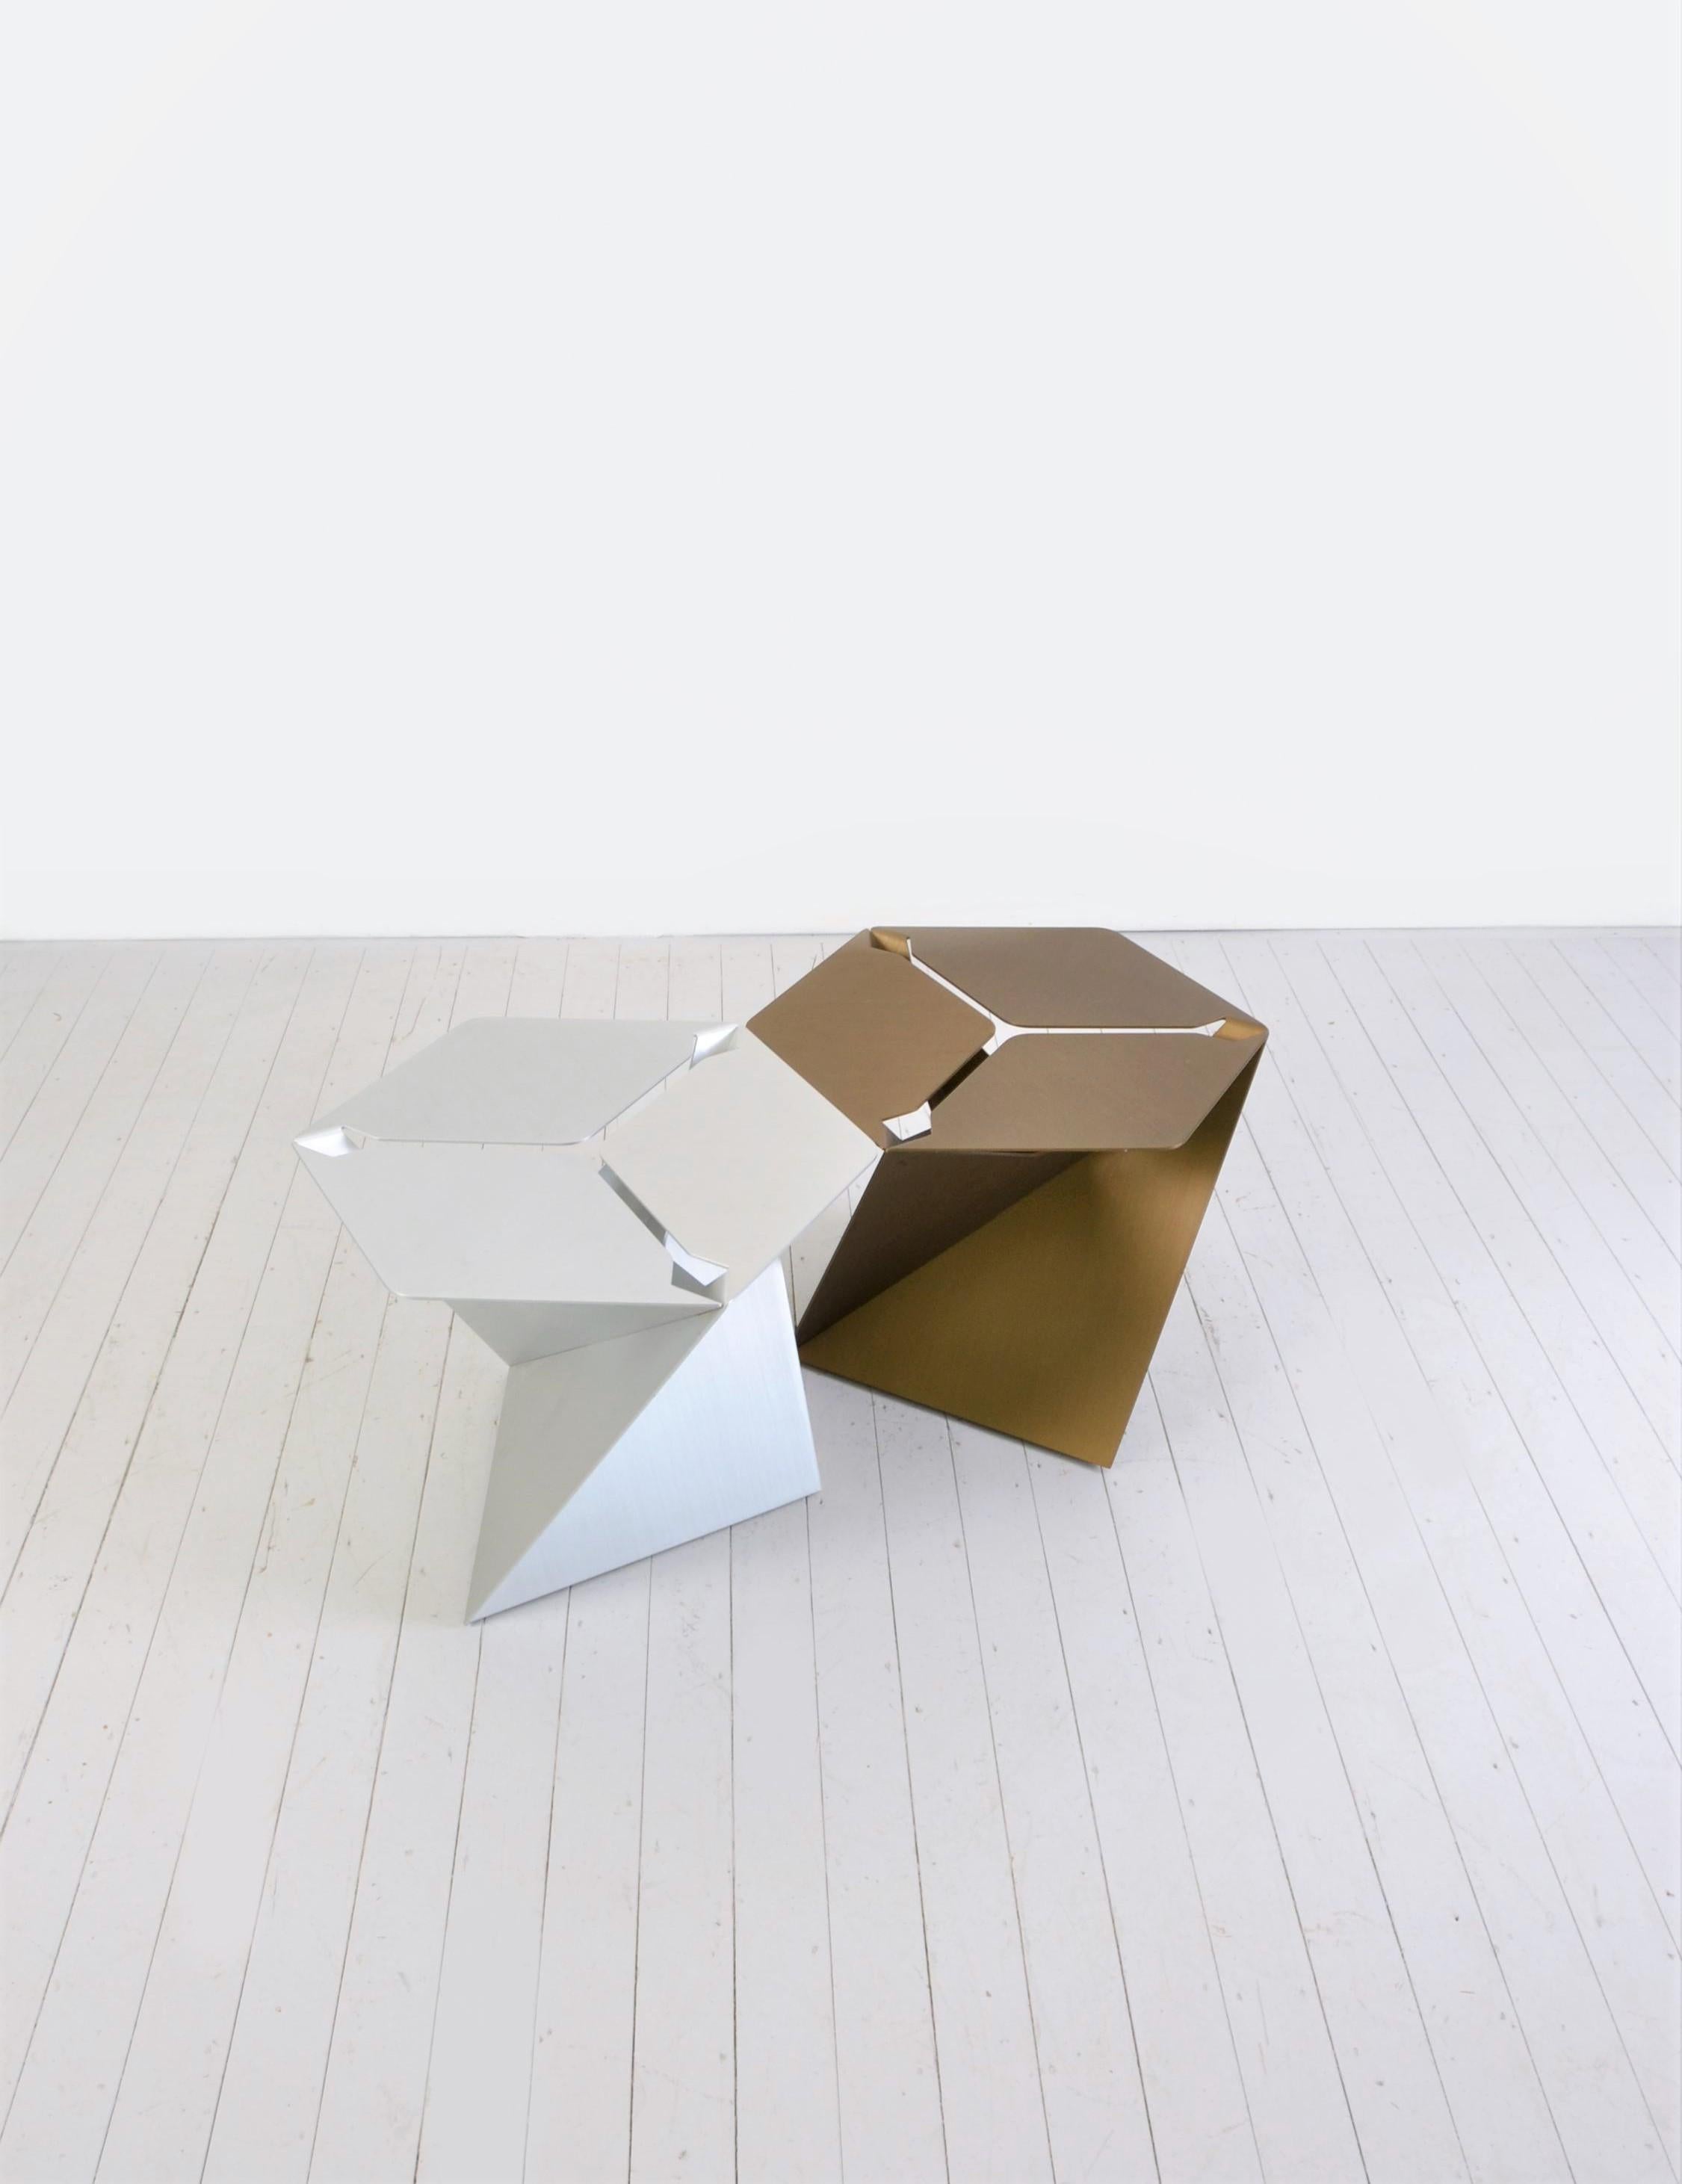 Très rare (seulement produite 2010-2012) Table basse hexagonale constituée de trois feuilles d'aluminium pliées identiques et emboîtées les unes dans les autres.
Disponible en deux couleurs anodisées : aluminium naturel, bronze
Matériau : aluminium